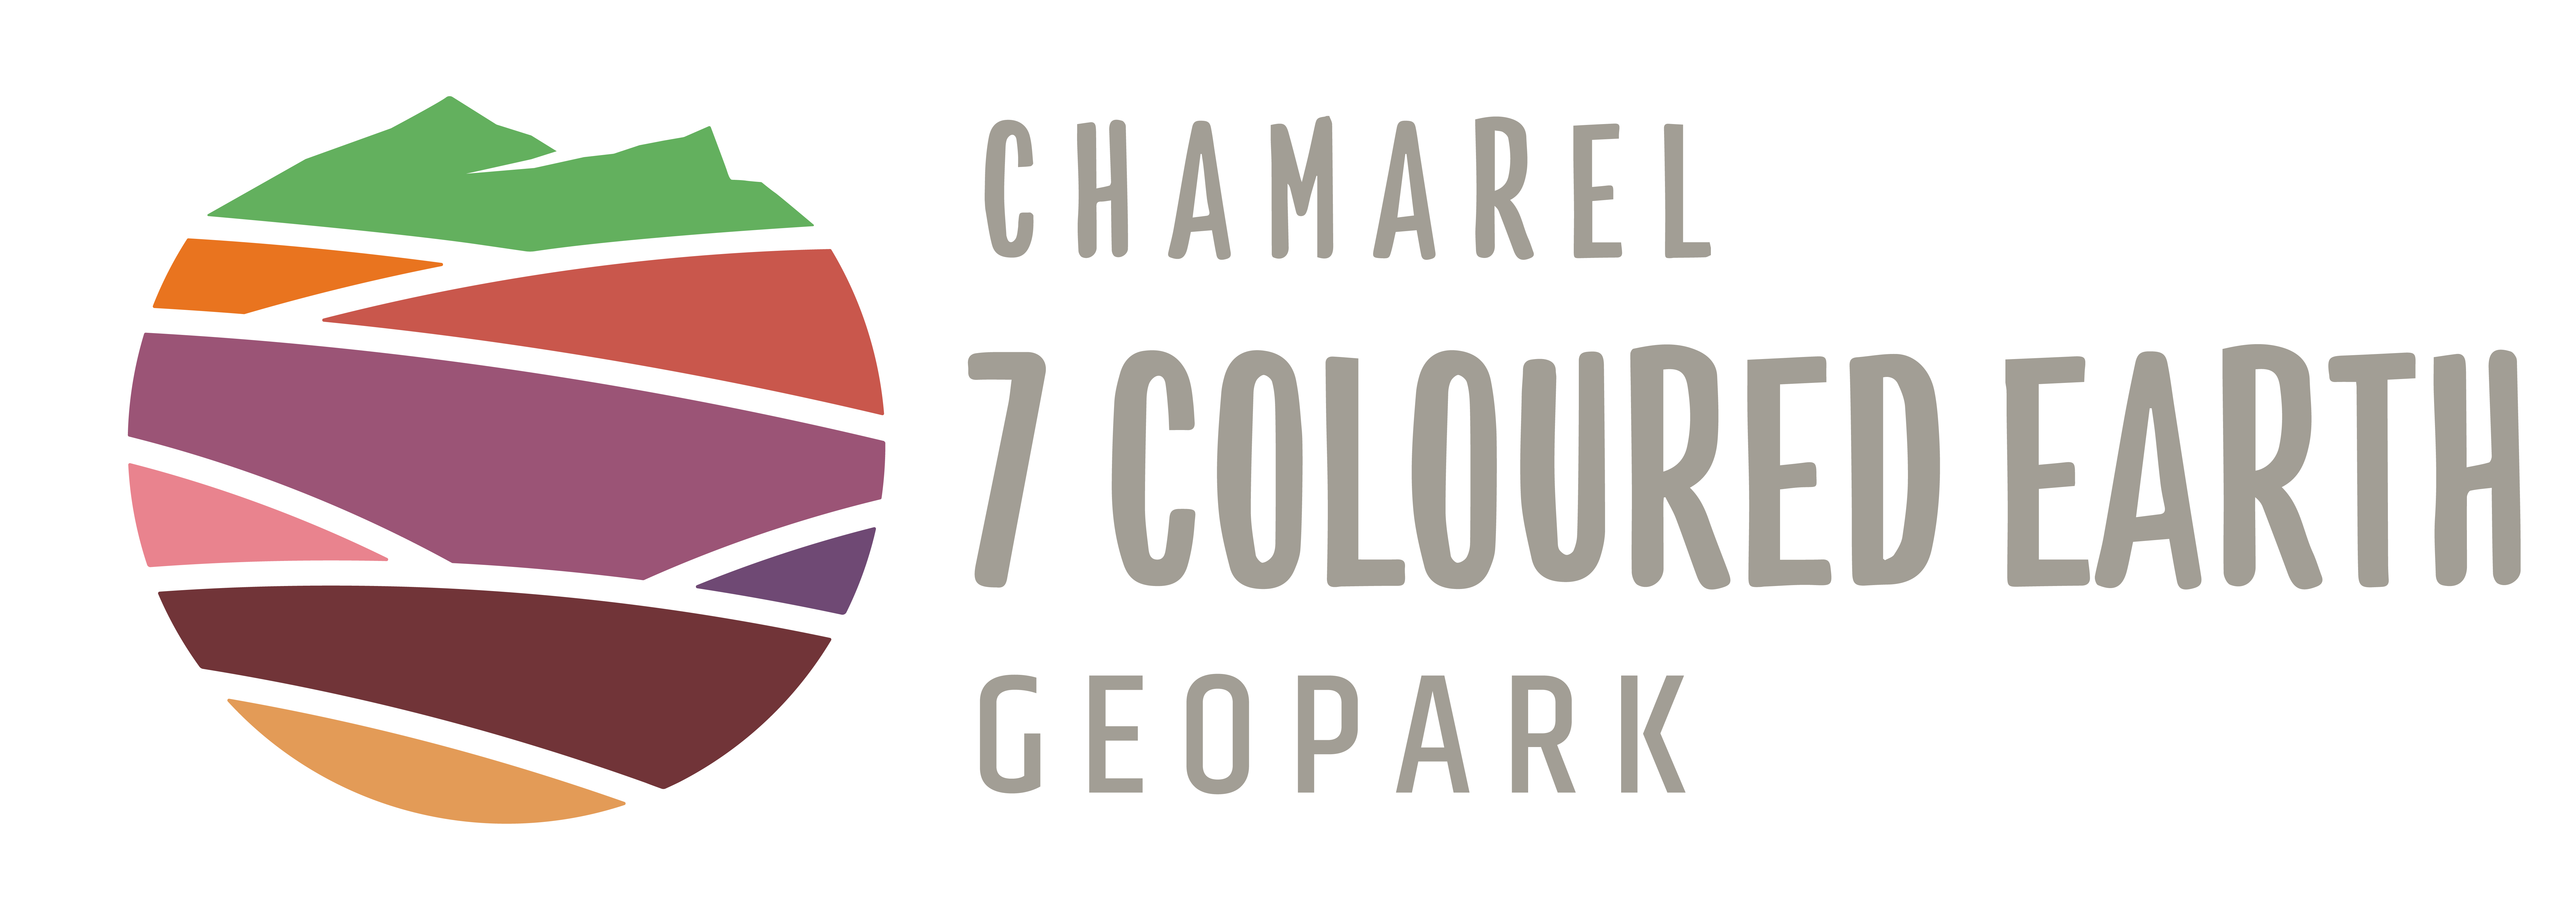 Chamarel seven coloured earth